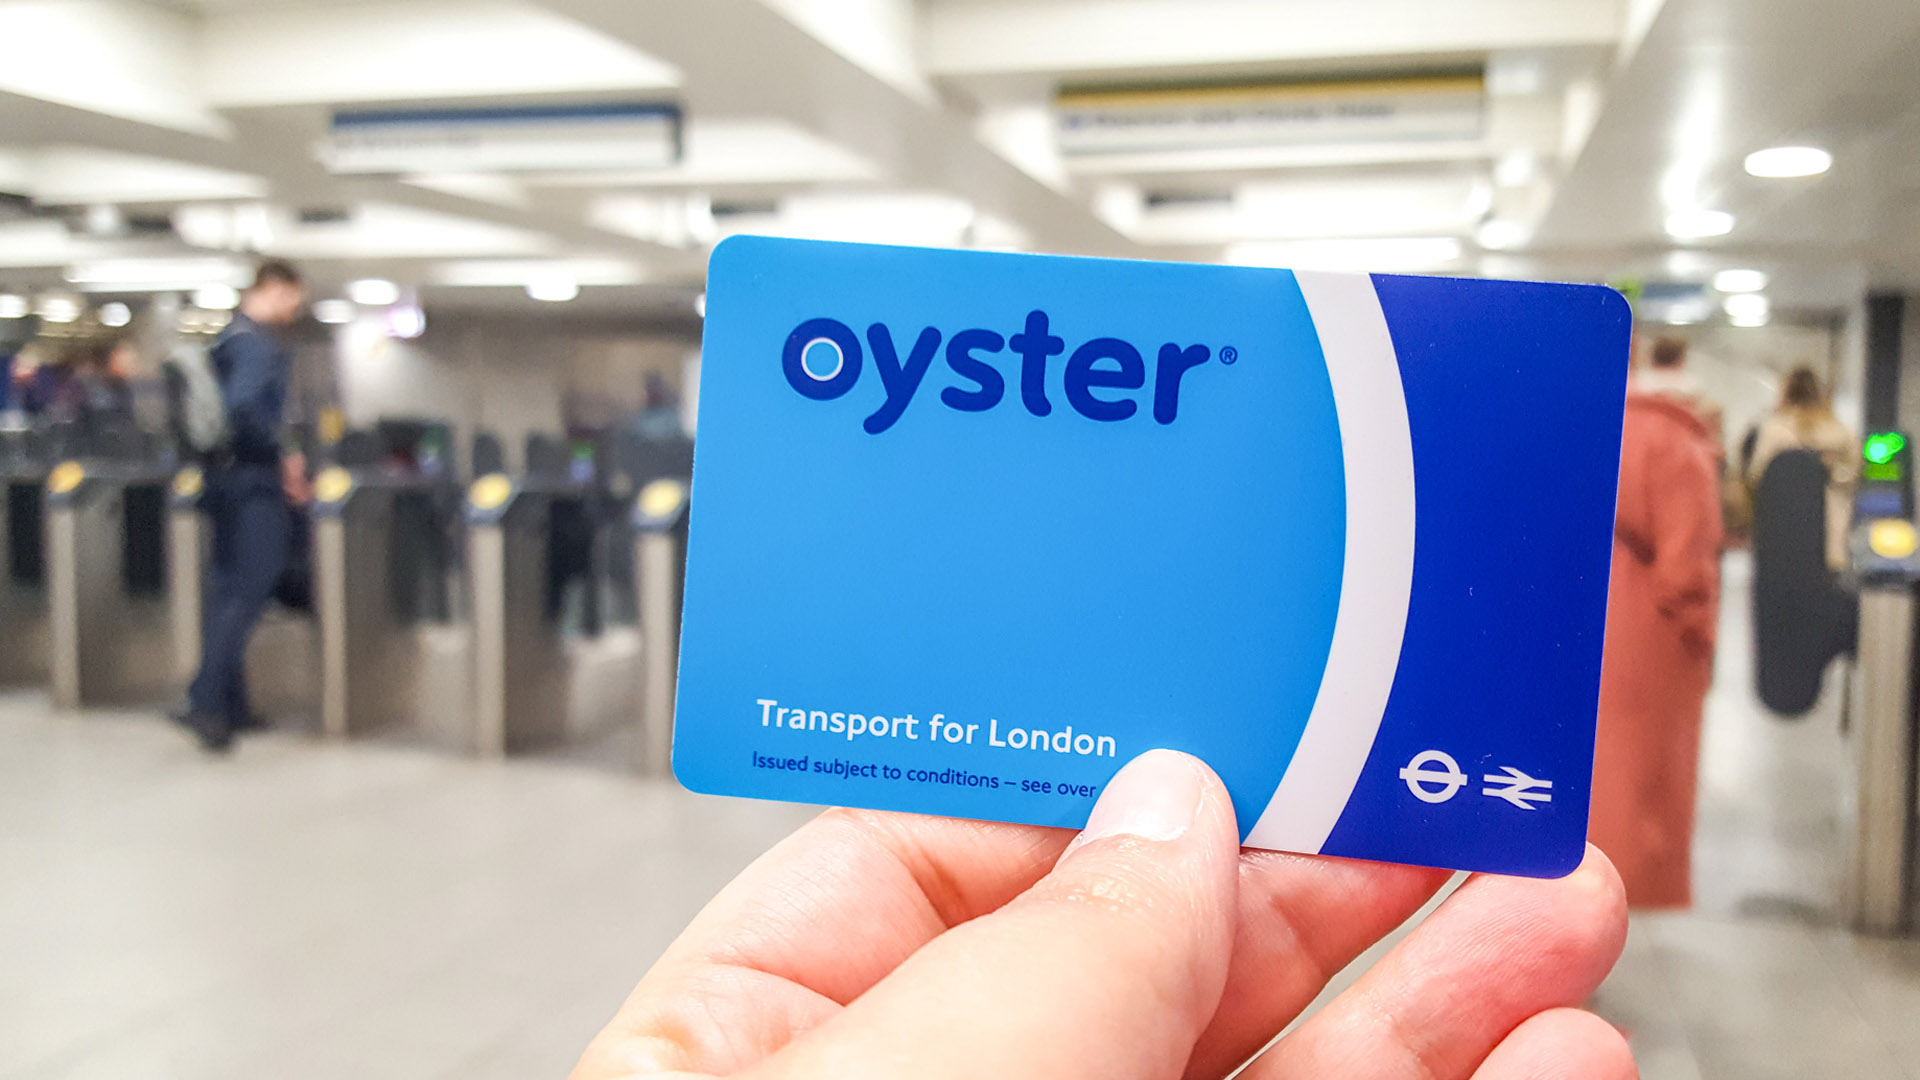 Transporte em Londres: Oyster